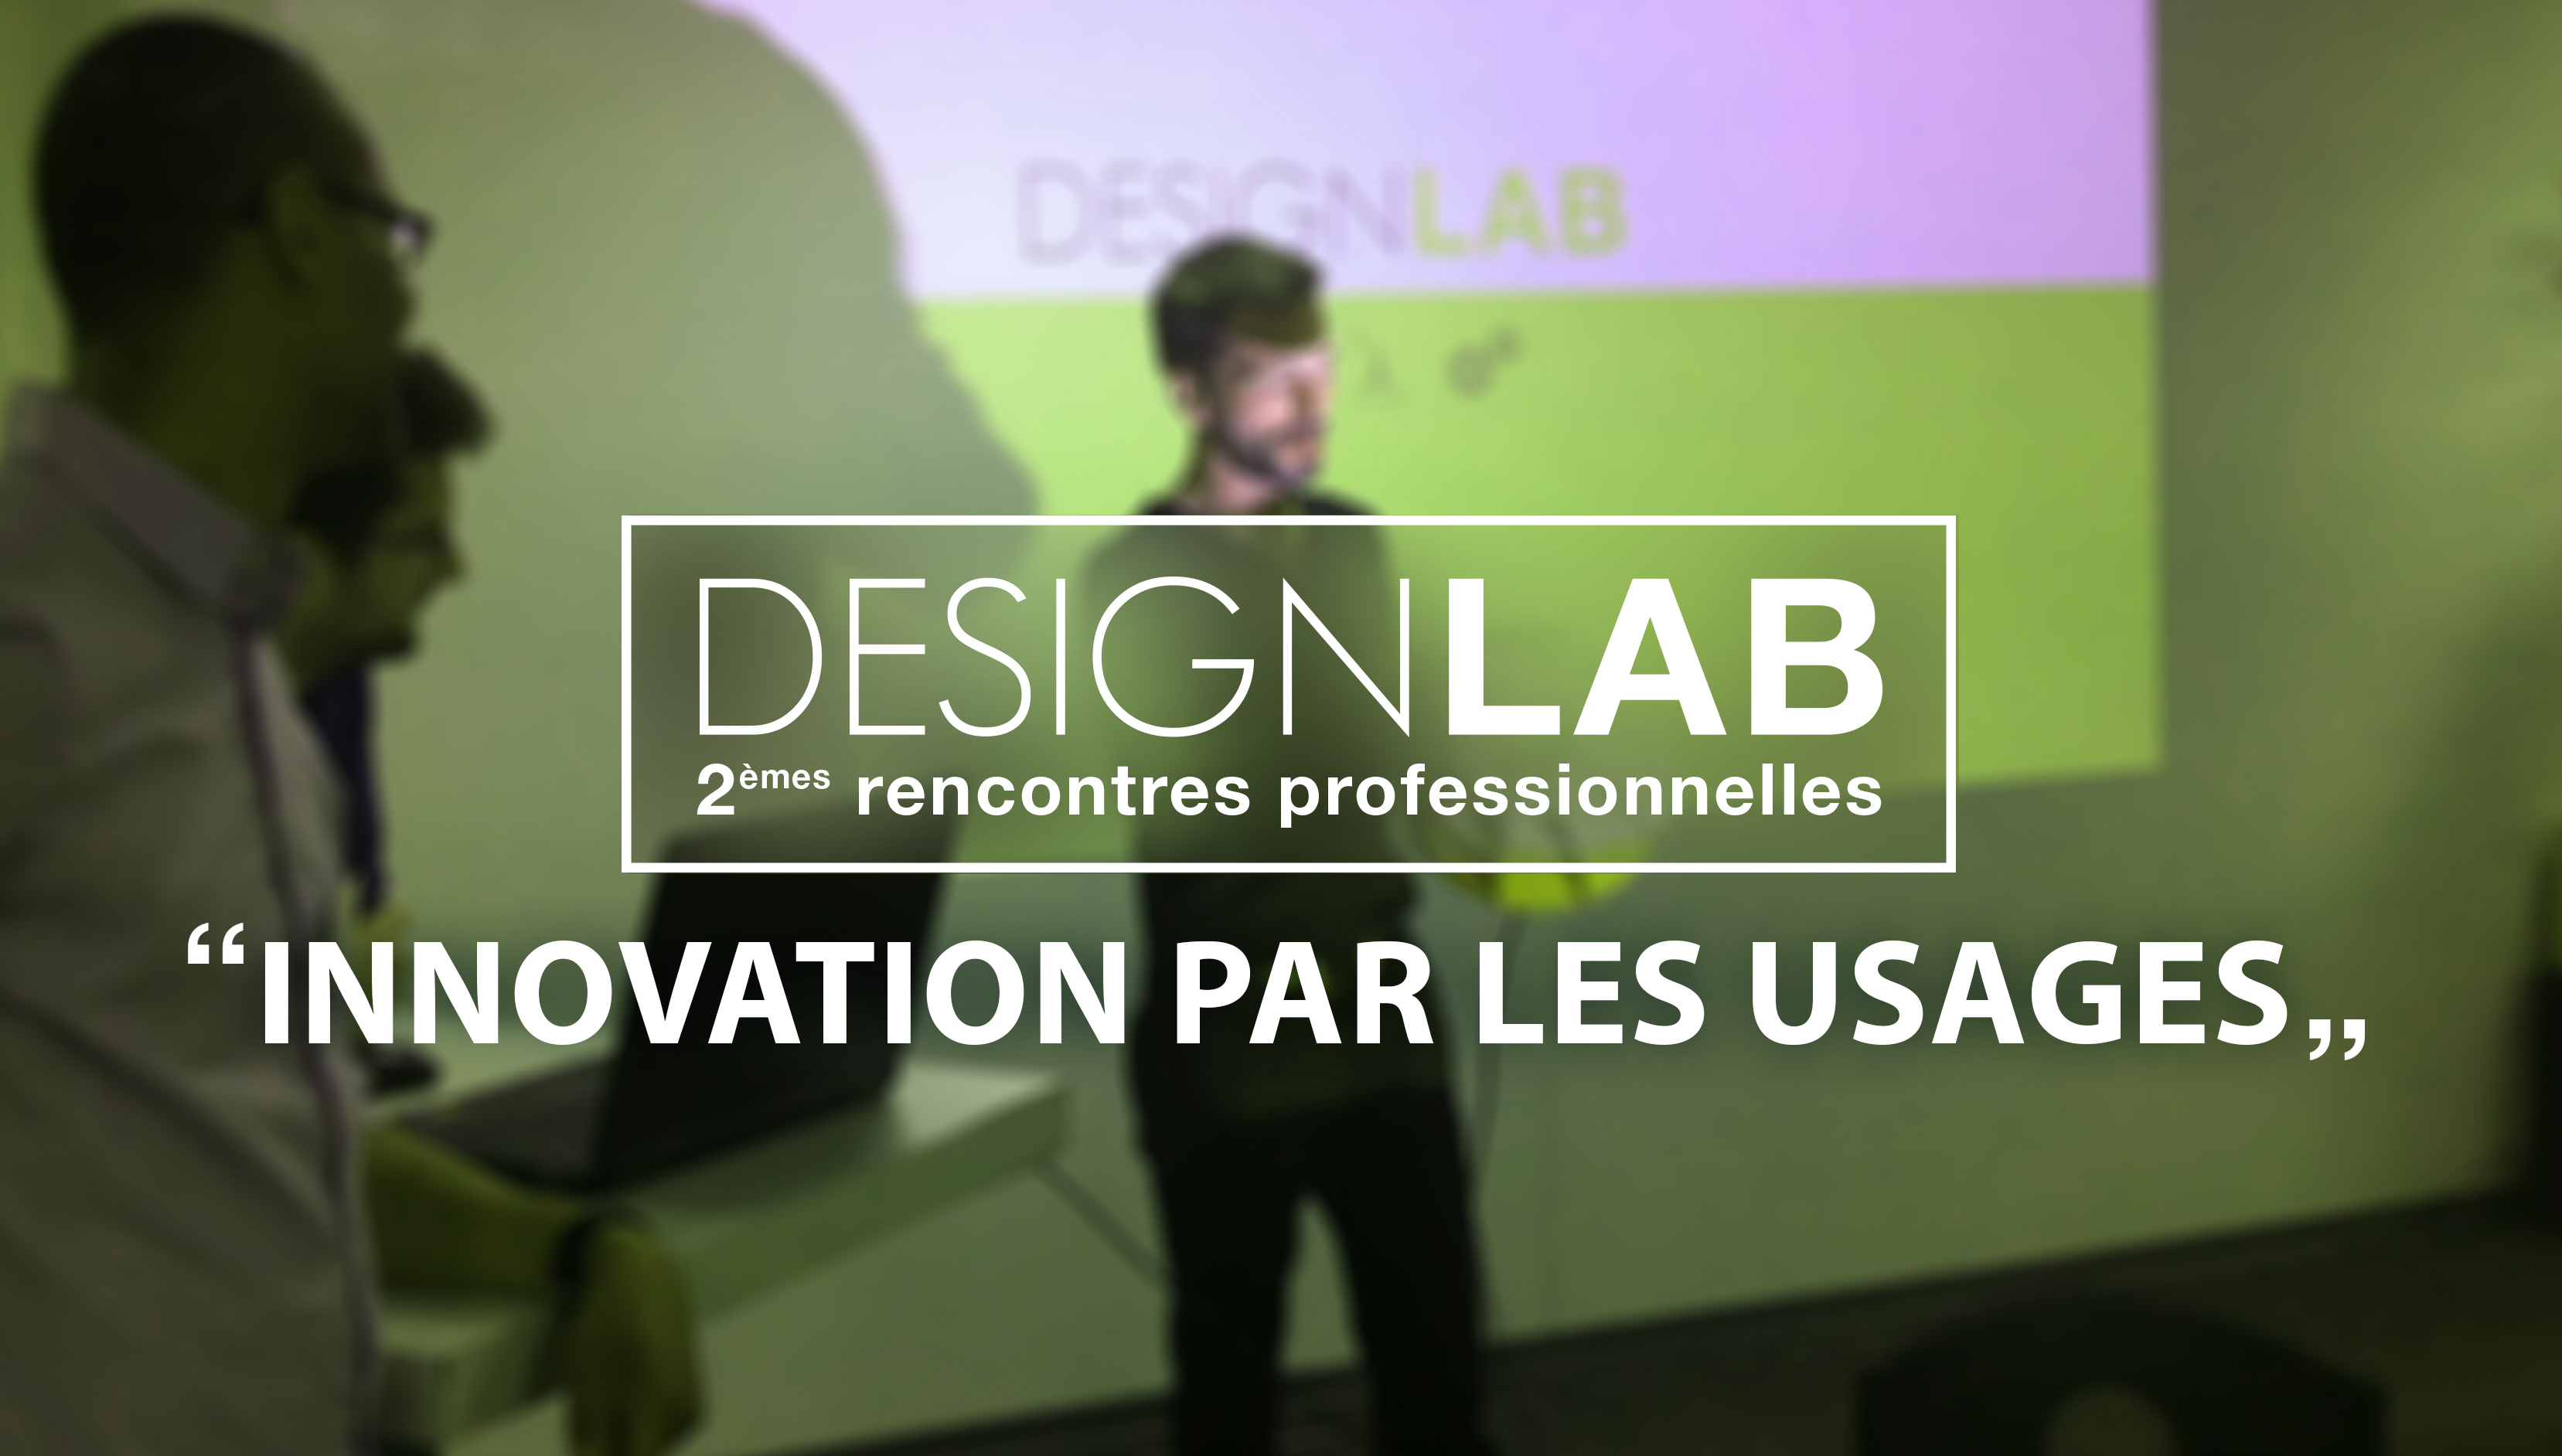 designlab 2 - innovation par les usages